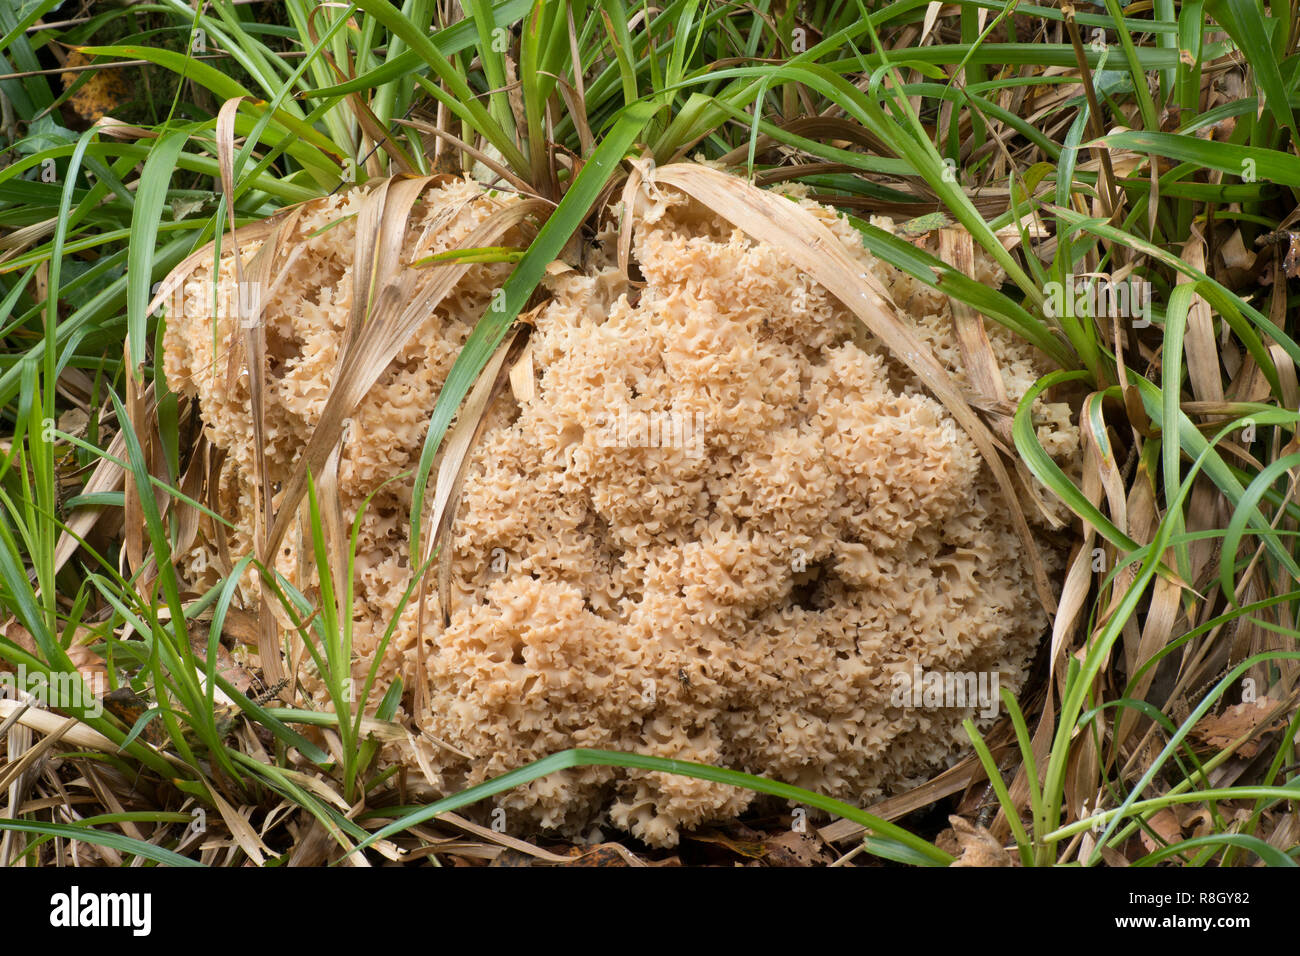 Blumenkohl Pilz (Sparassis crispa) wachsen auf dem Boden im Wald. Tipperary, Irland Stockfoto